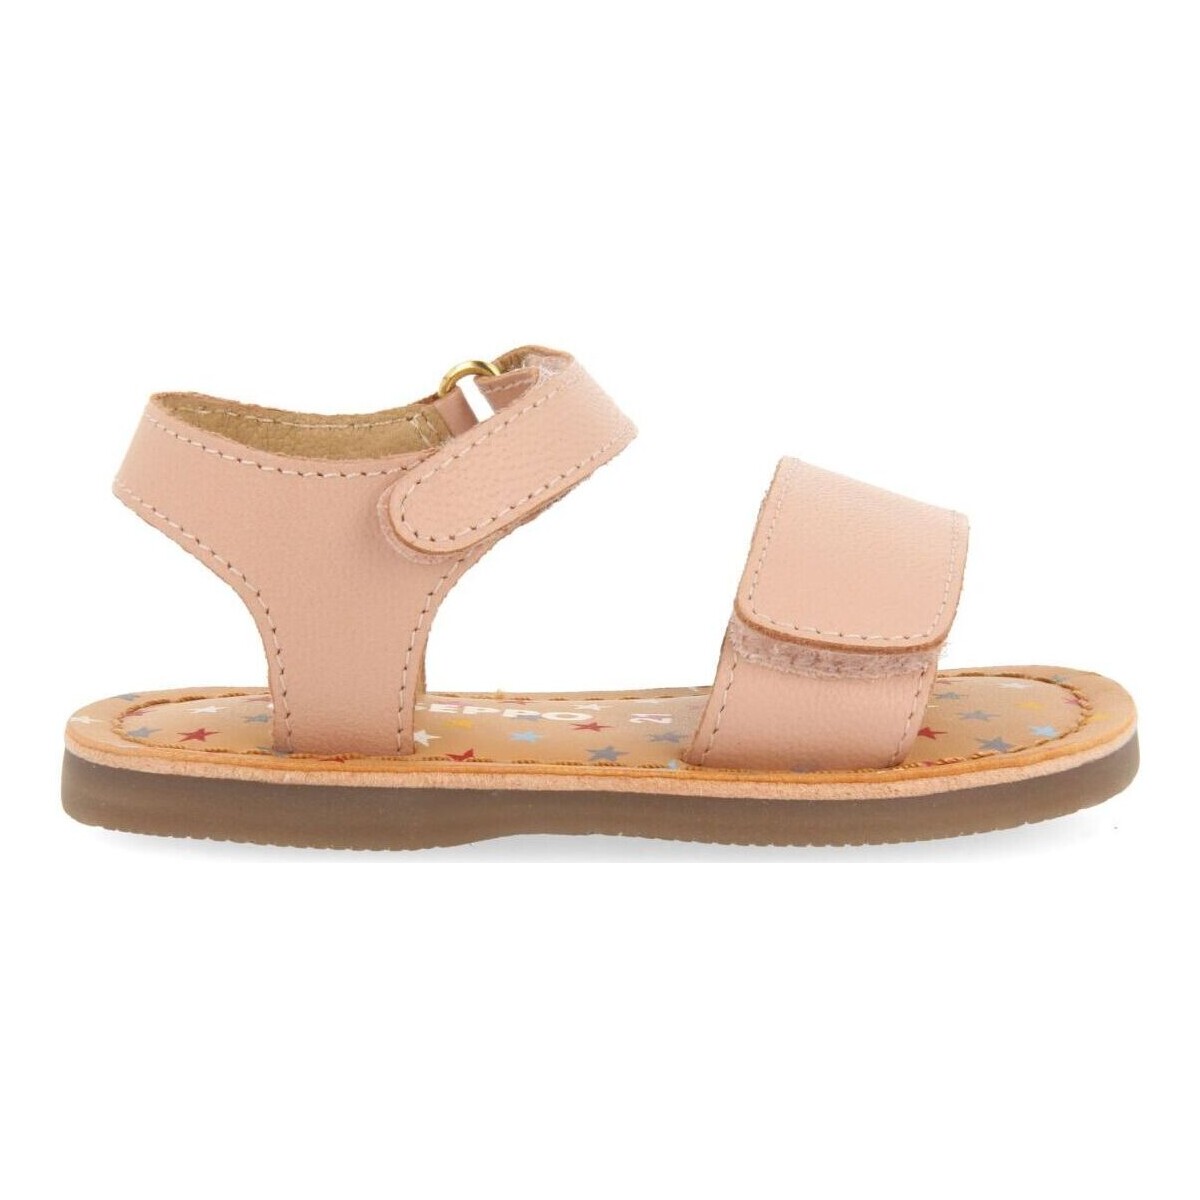 Schuhe Sandalen / Sandaletten Gioseppo HIMARE Rosa